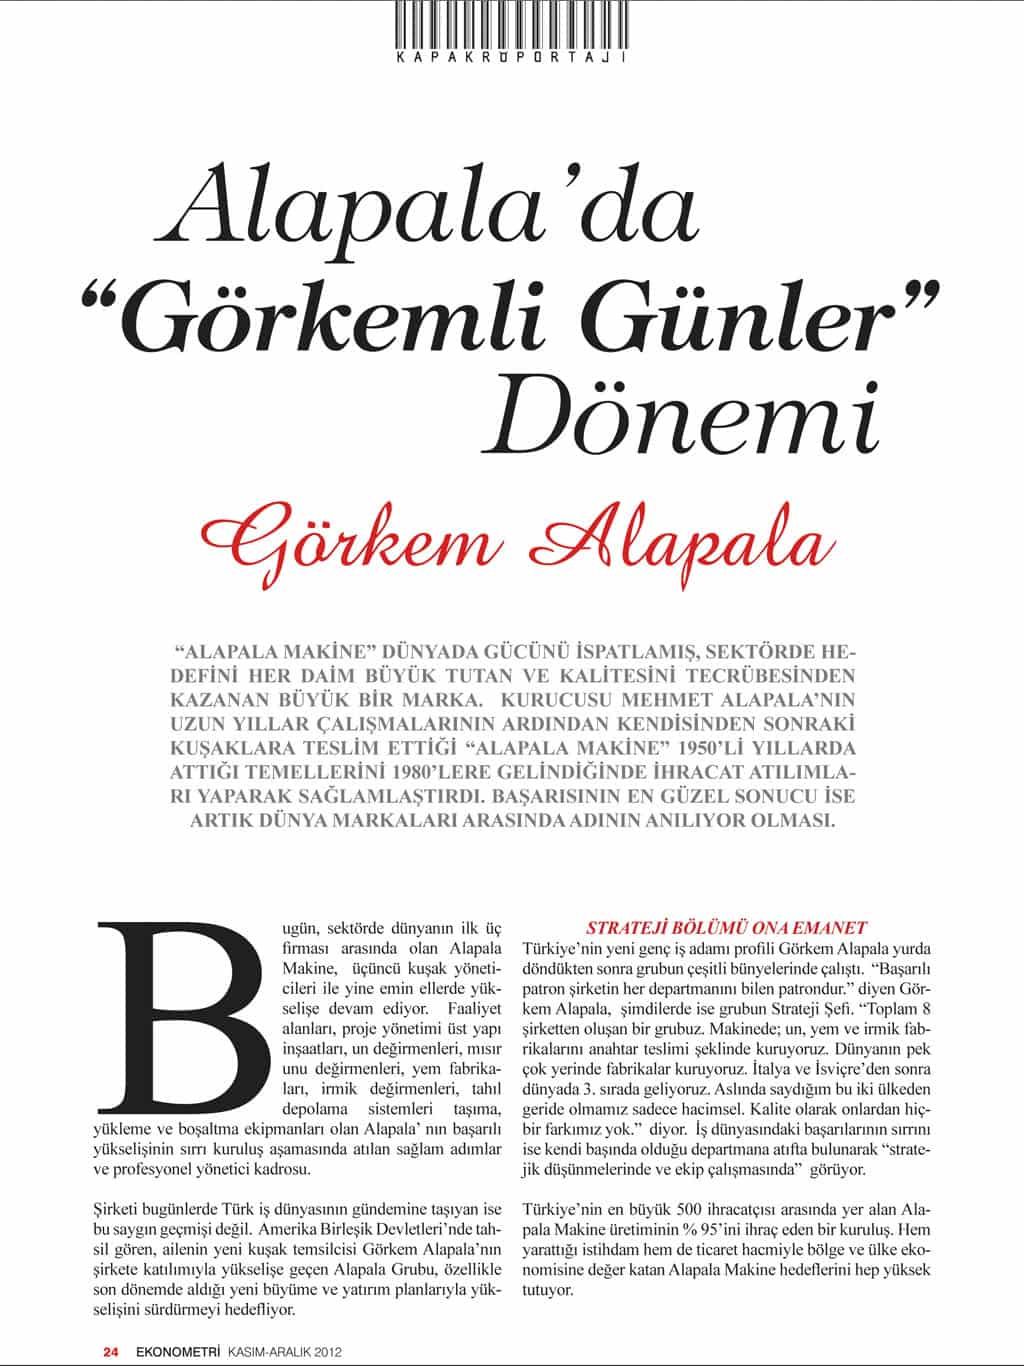 Interview on Ekonometri Magazine